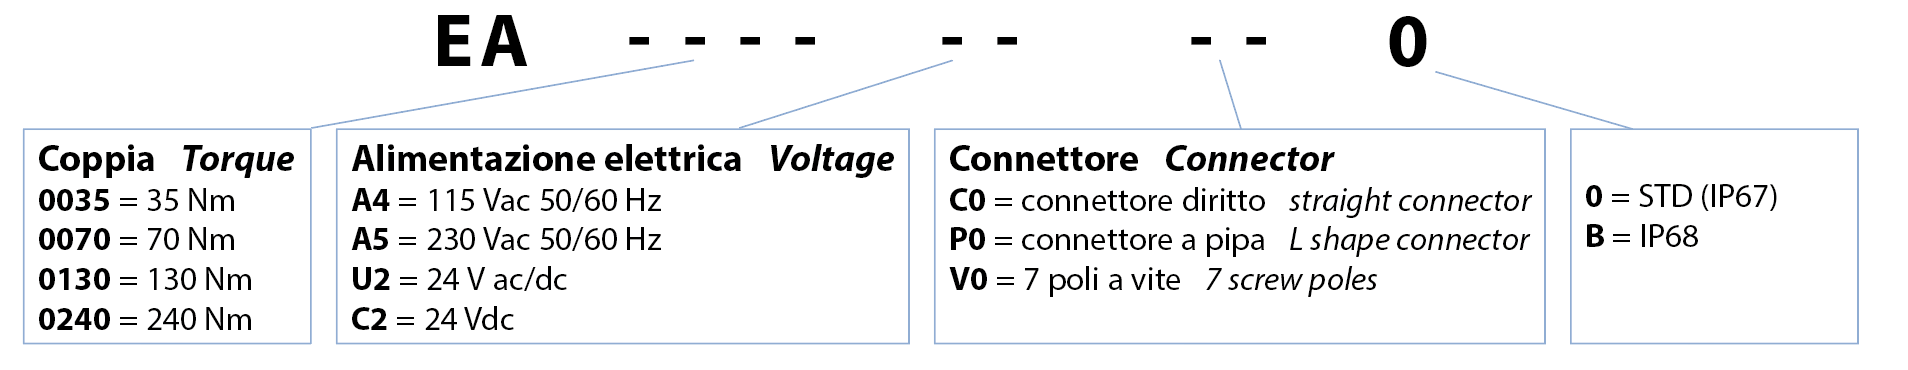 Attuatore elettrico tipo rotativo EA ON-OFF - caratteristiche - CODICI DI ORDINAZIONE ATTUATORE